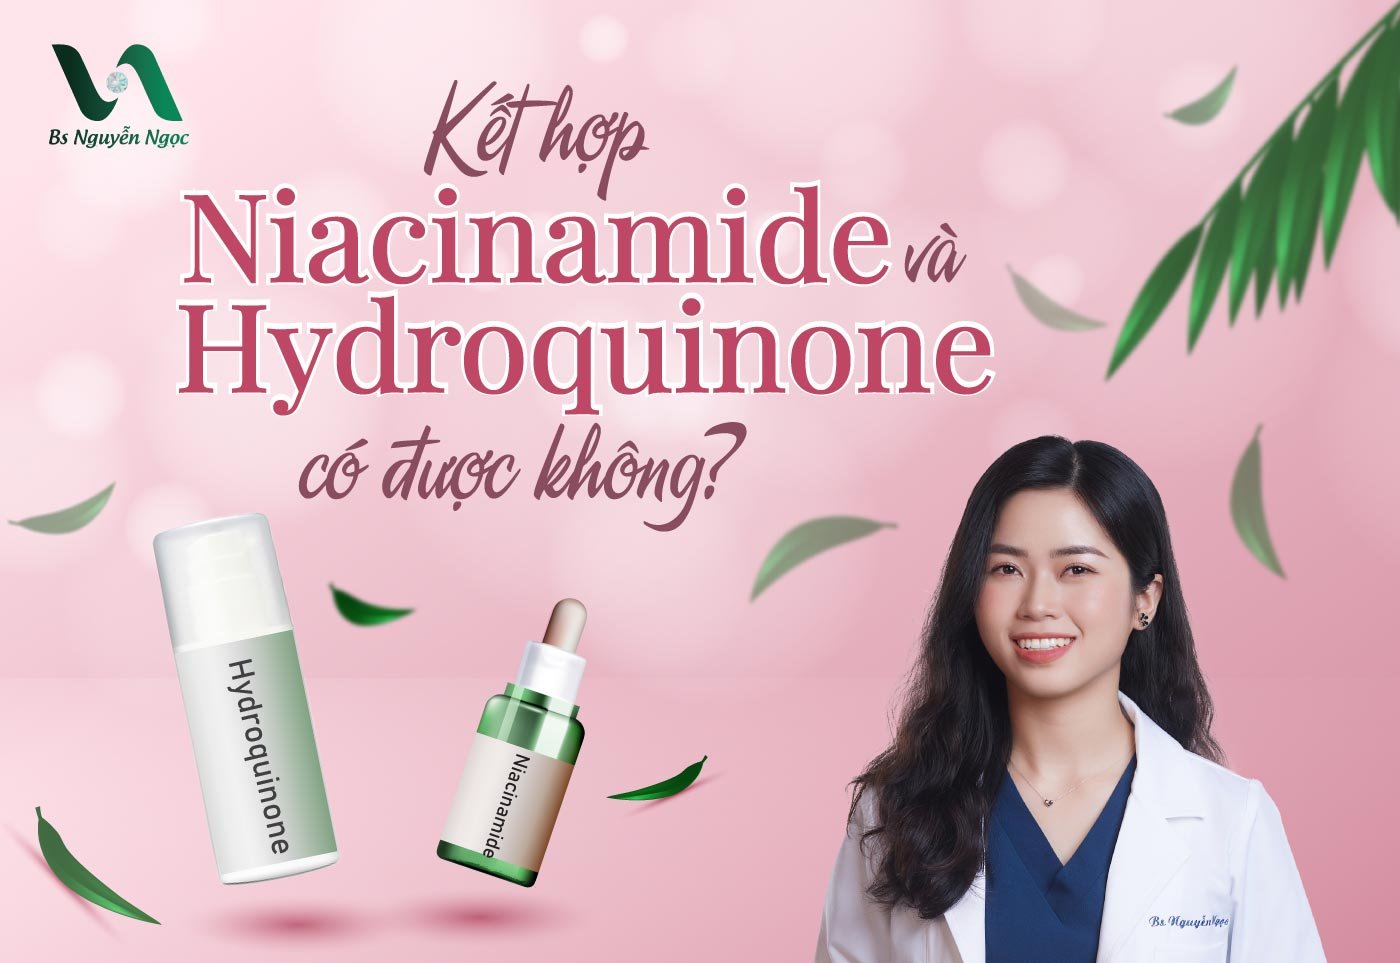 Kết hợp Niacinamide và Hydroquinone có được không?